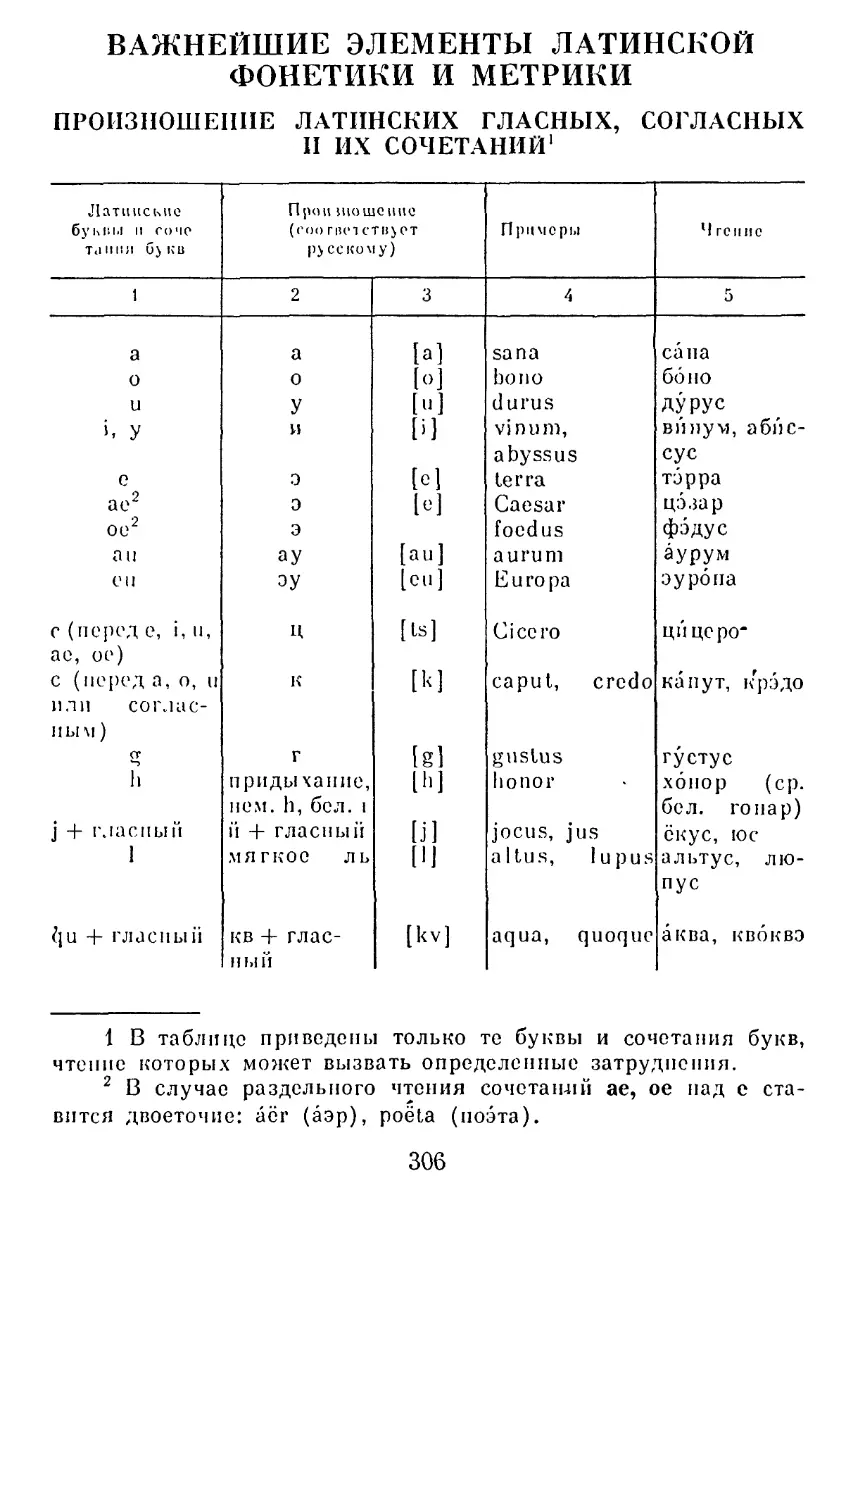 Важнейшие элементы латинской фонетики и метрики